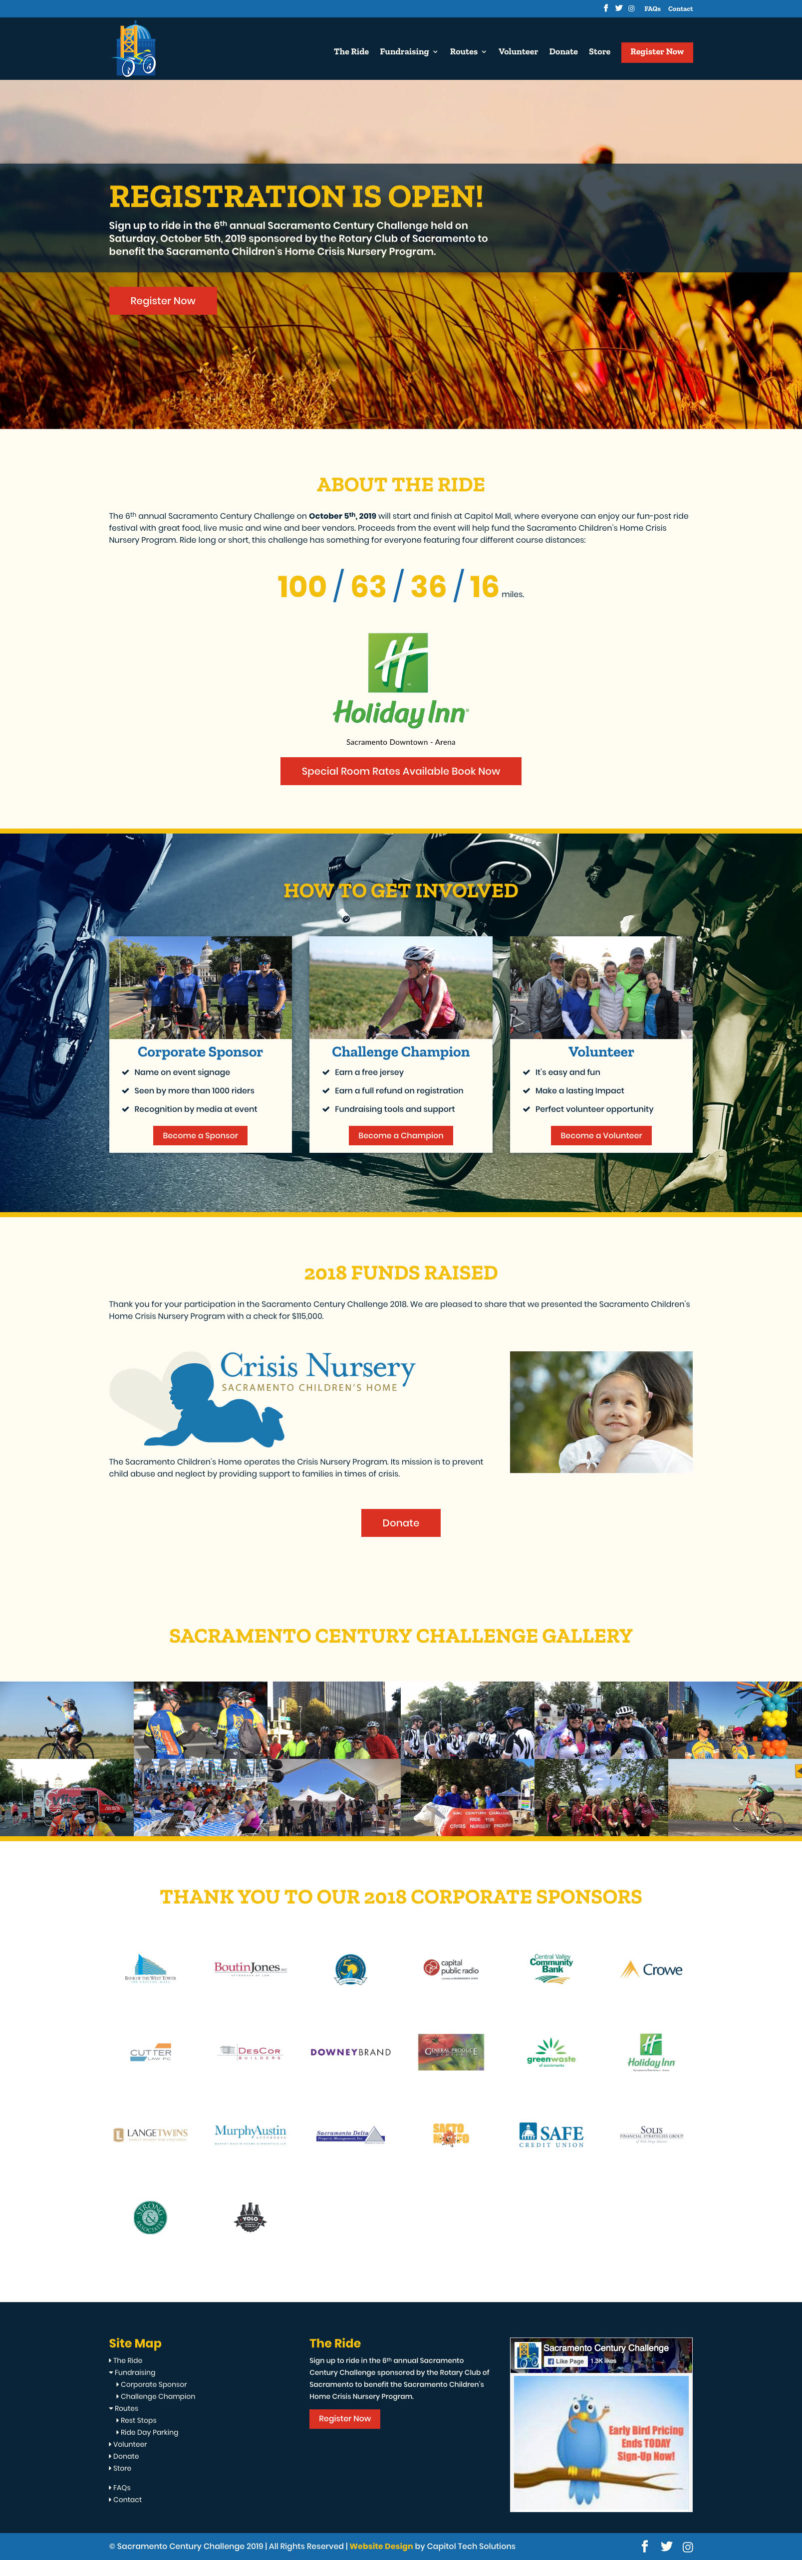 Sacramento Century Website Design